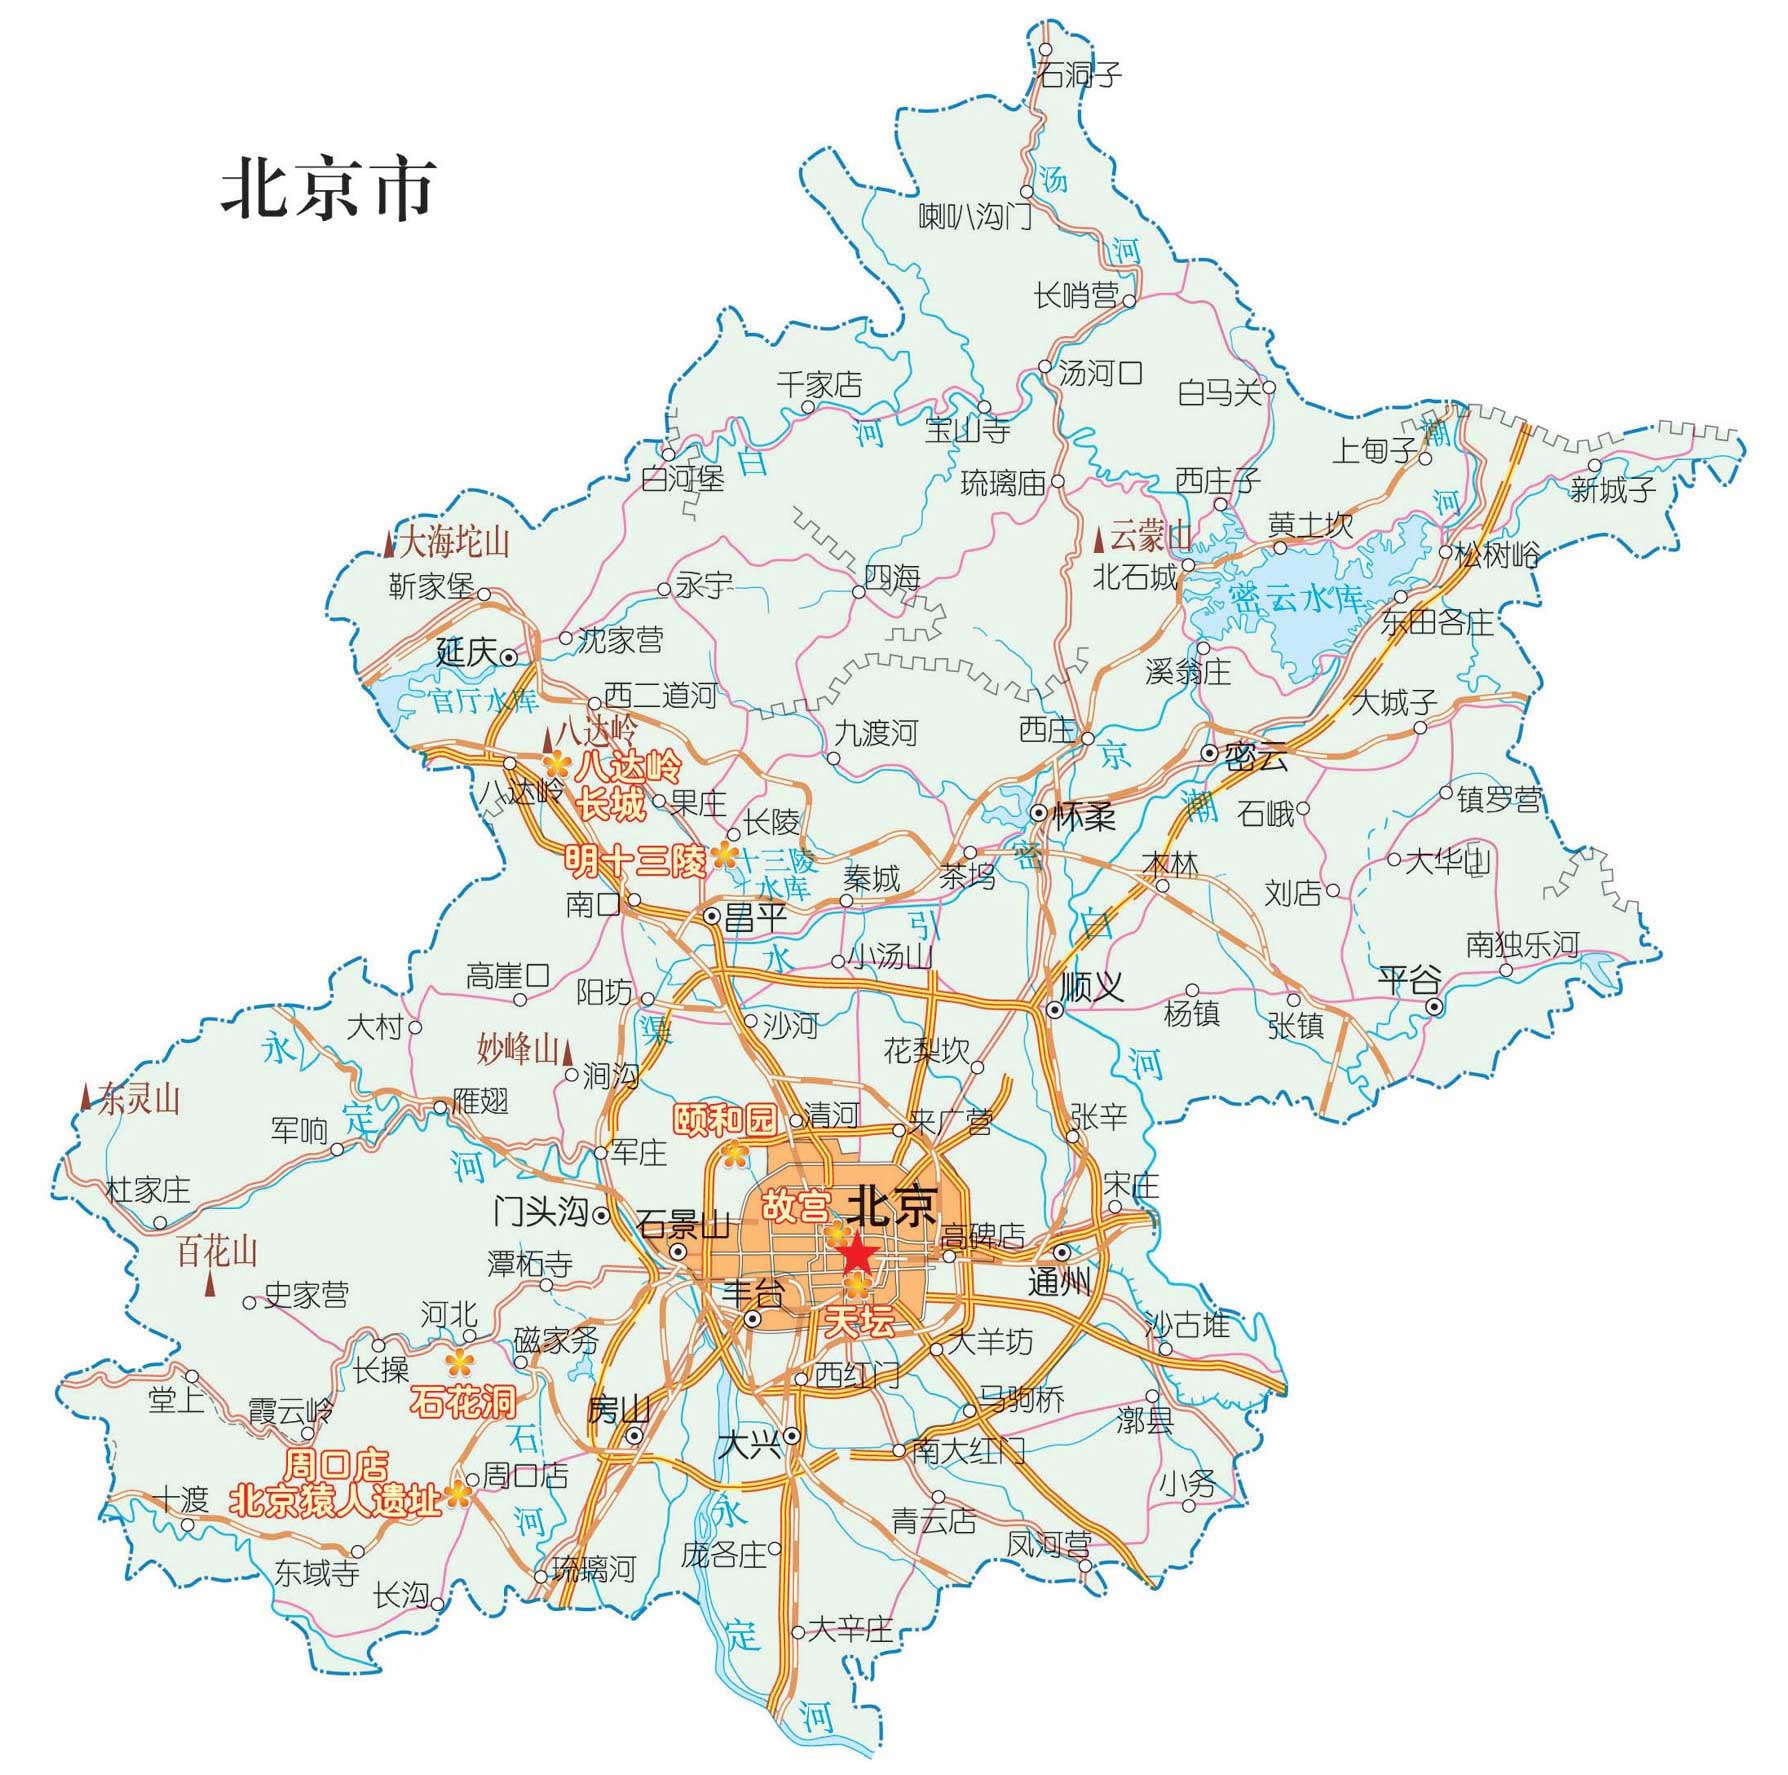 北京重要旅游景点分布图_北京地图库图片